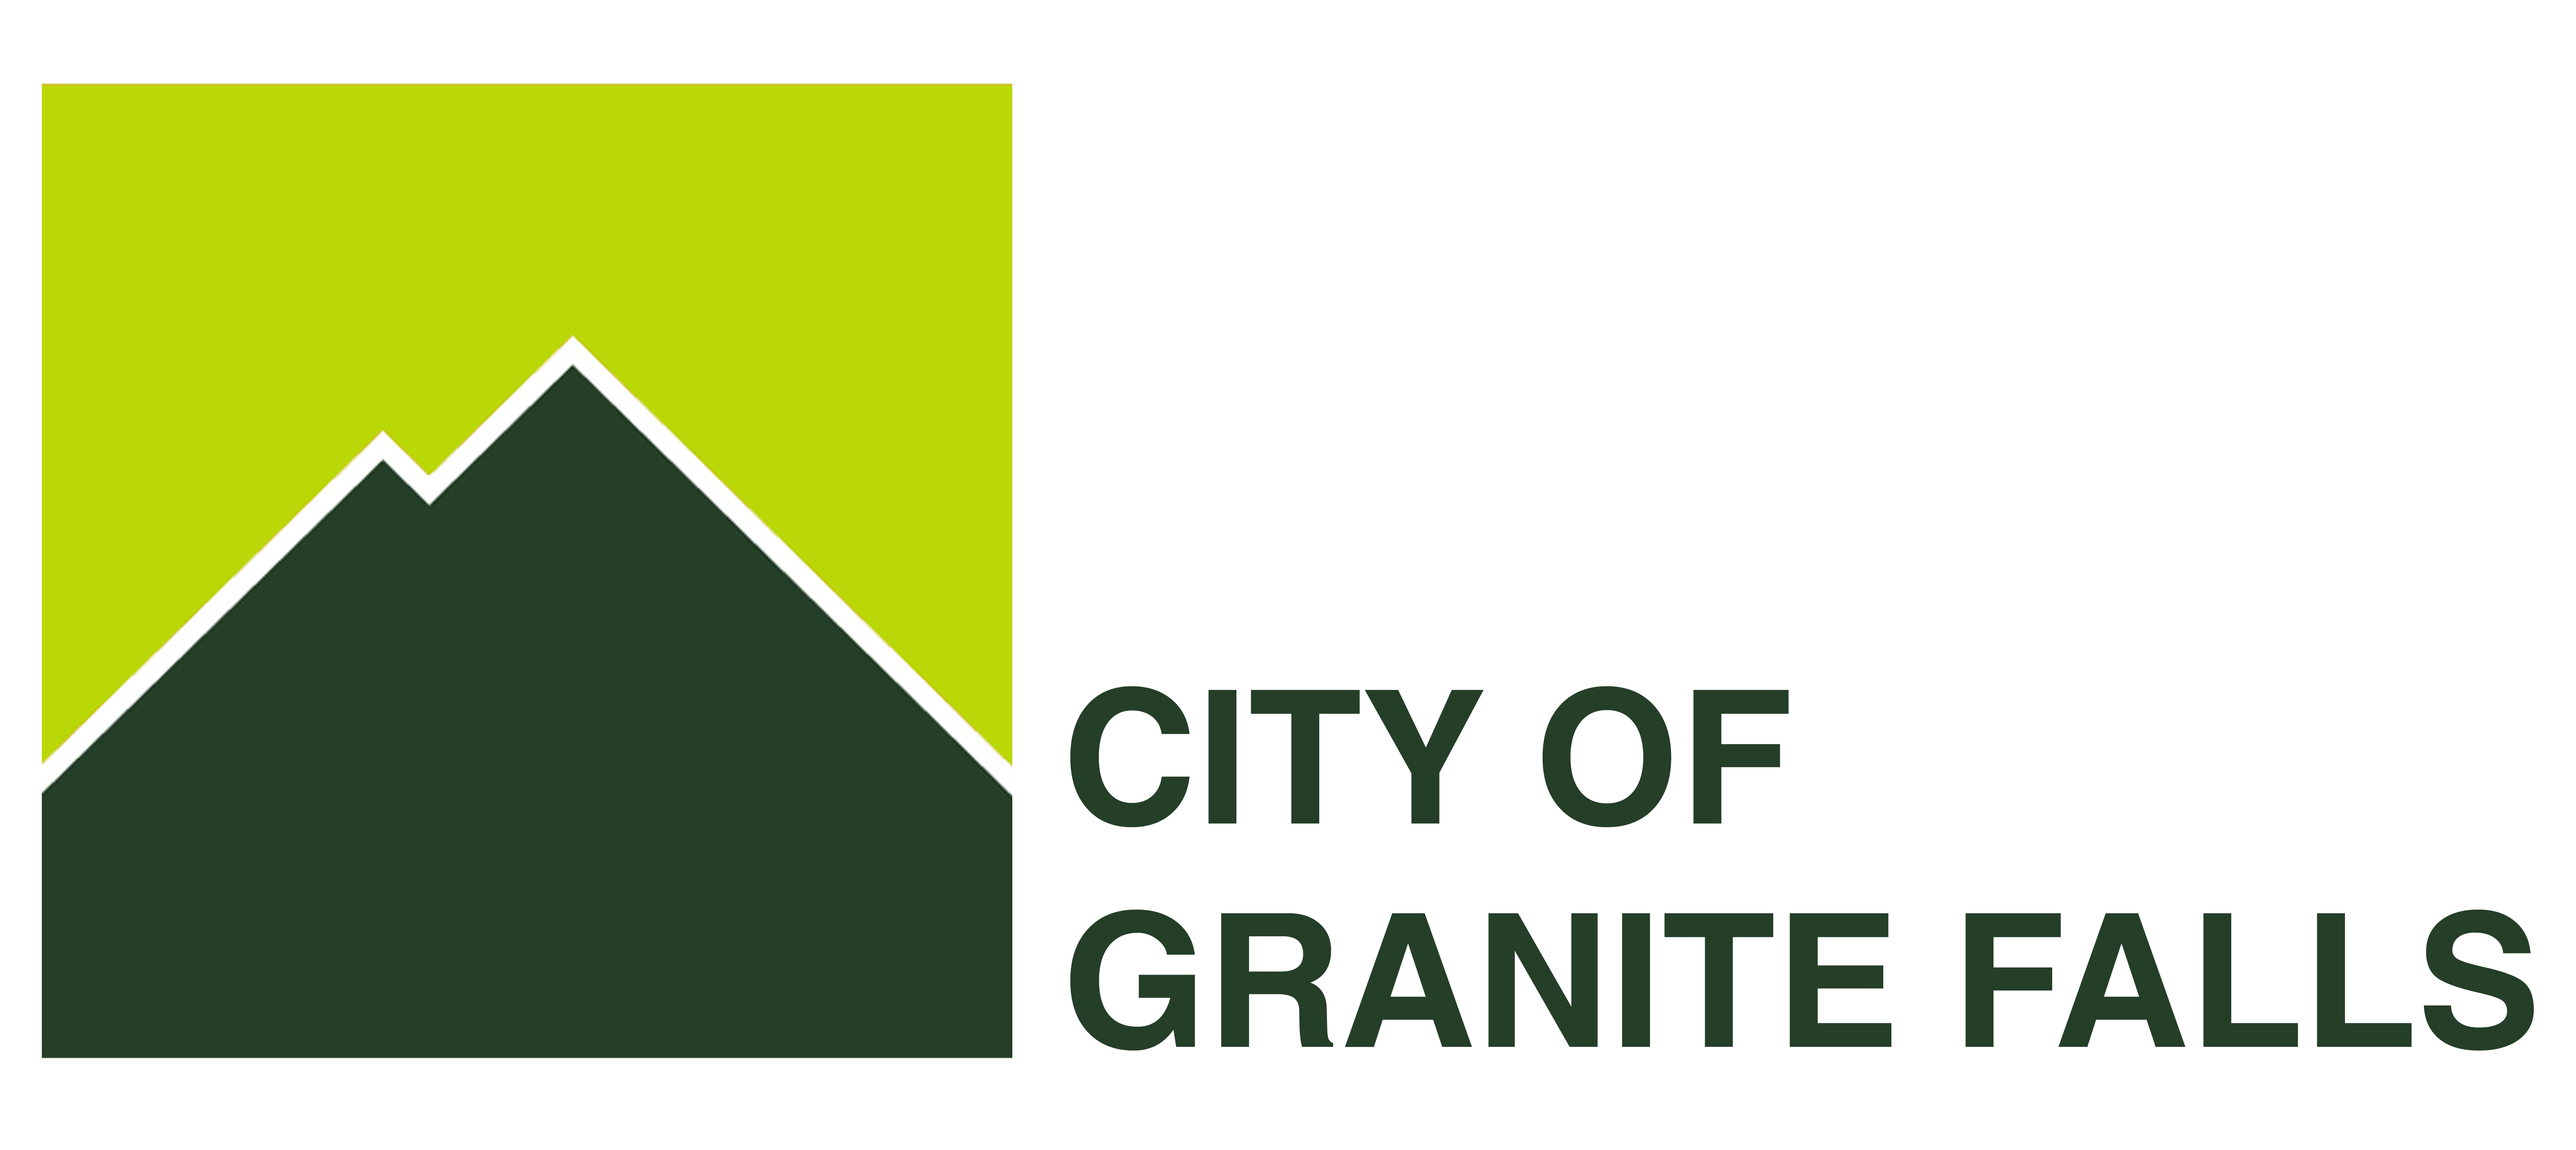 Granite Falls logo